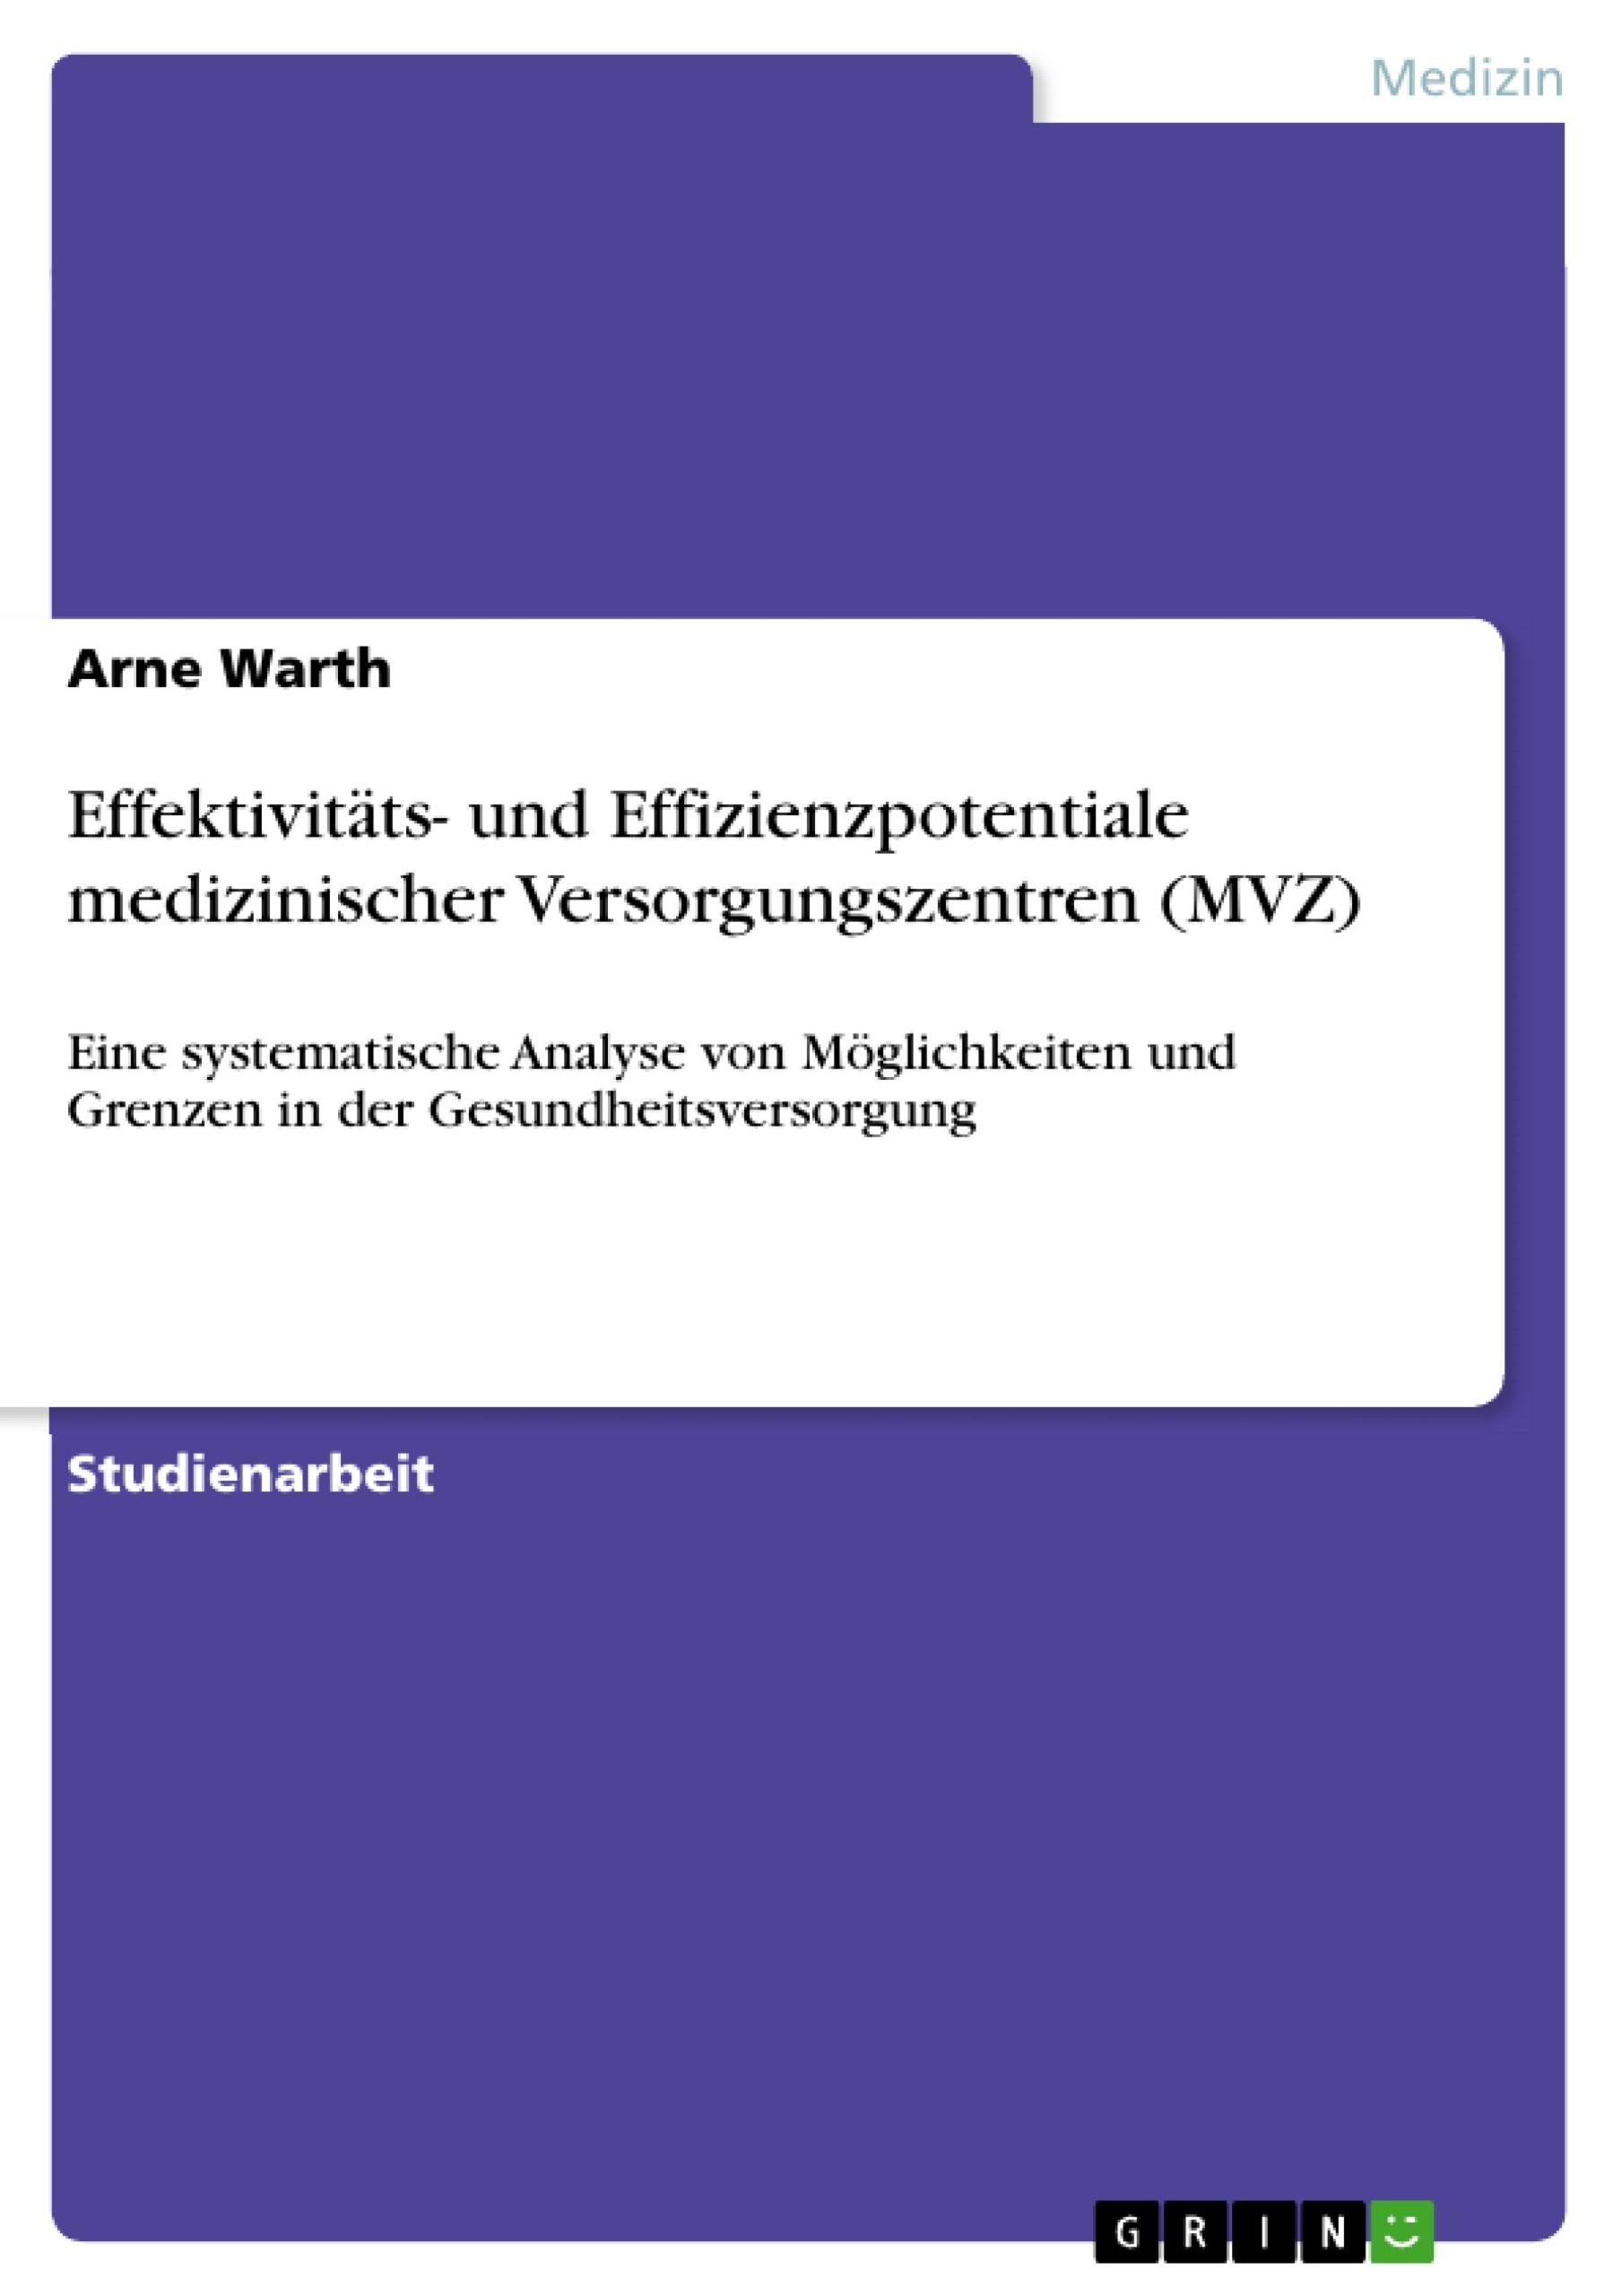 Titre: Effektivitäts- und Effizienzpotentiale medizinischer Versorgungszentren (MVZ)